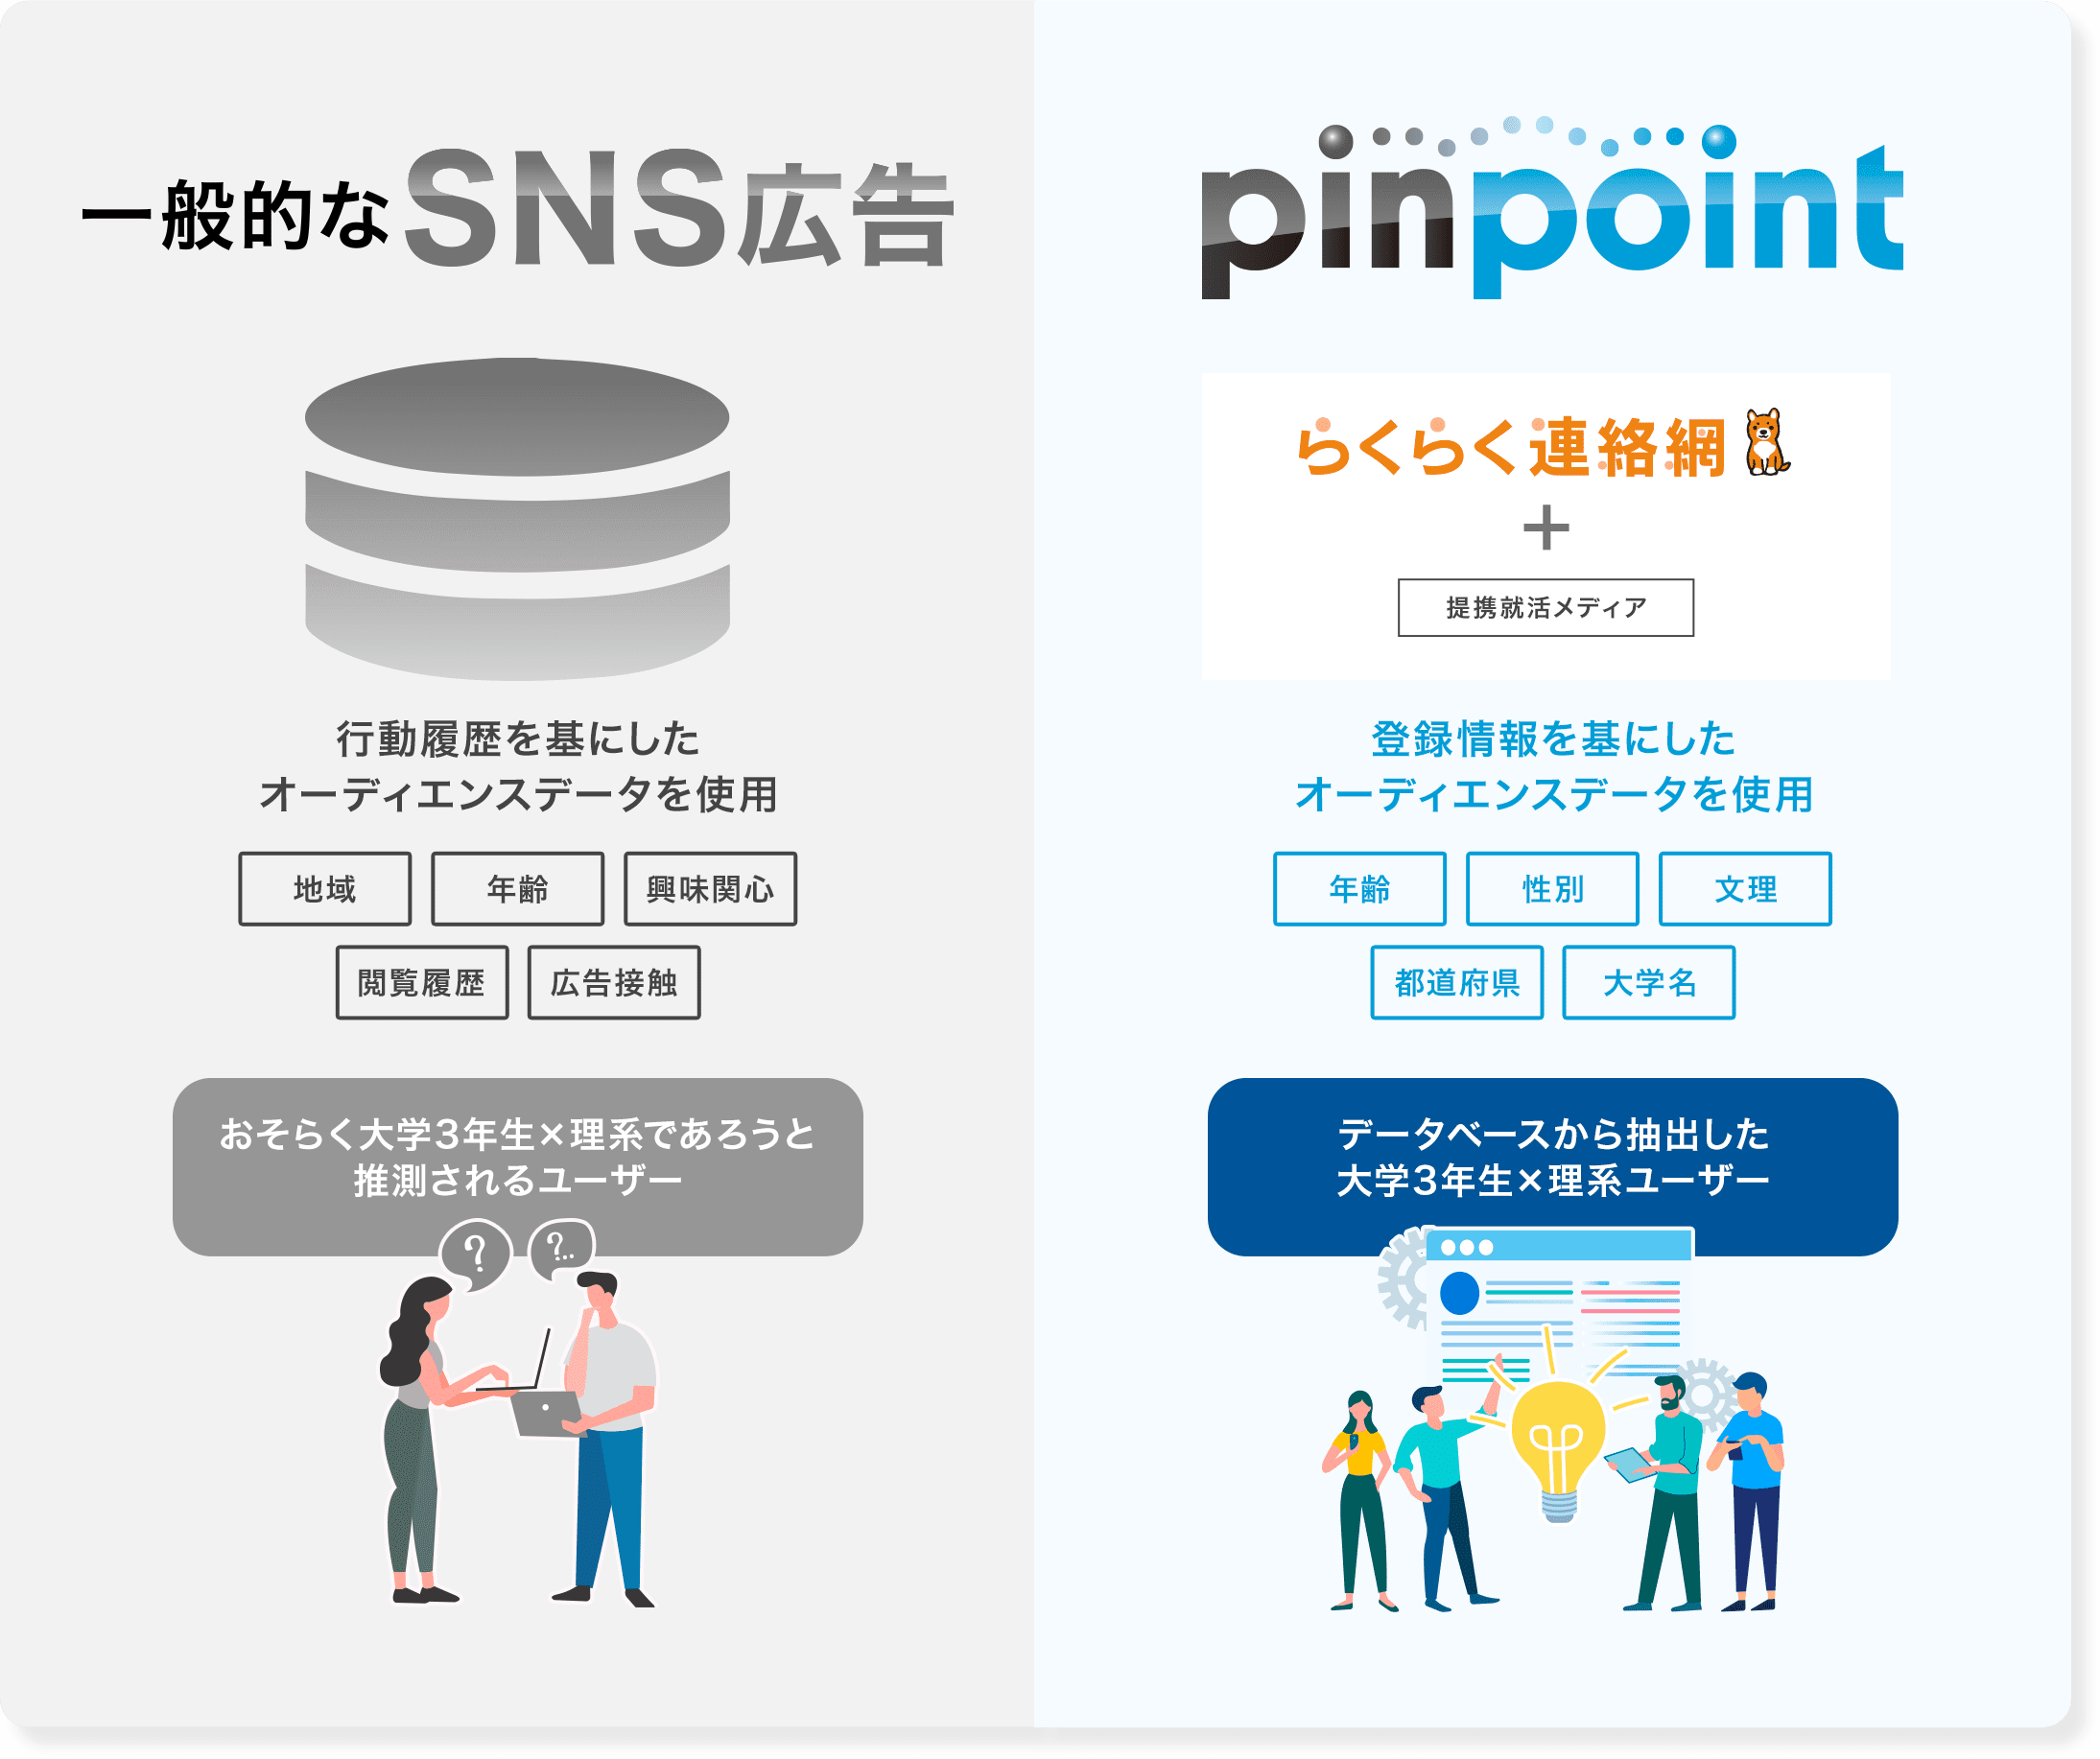 一般的なSNS広告とpinpointの活用データの違い